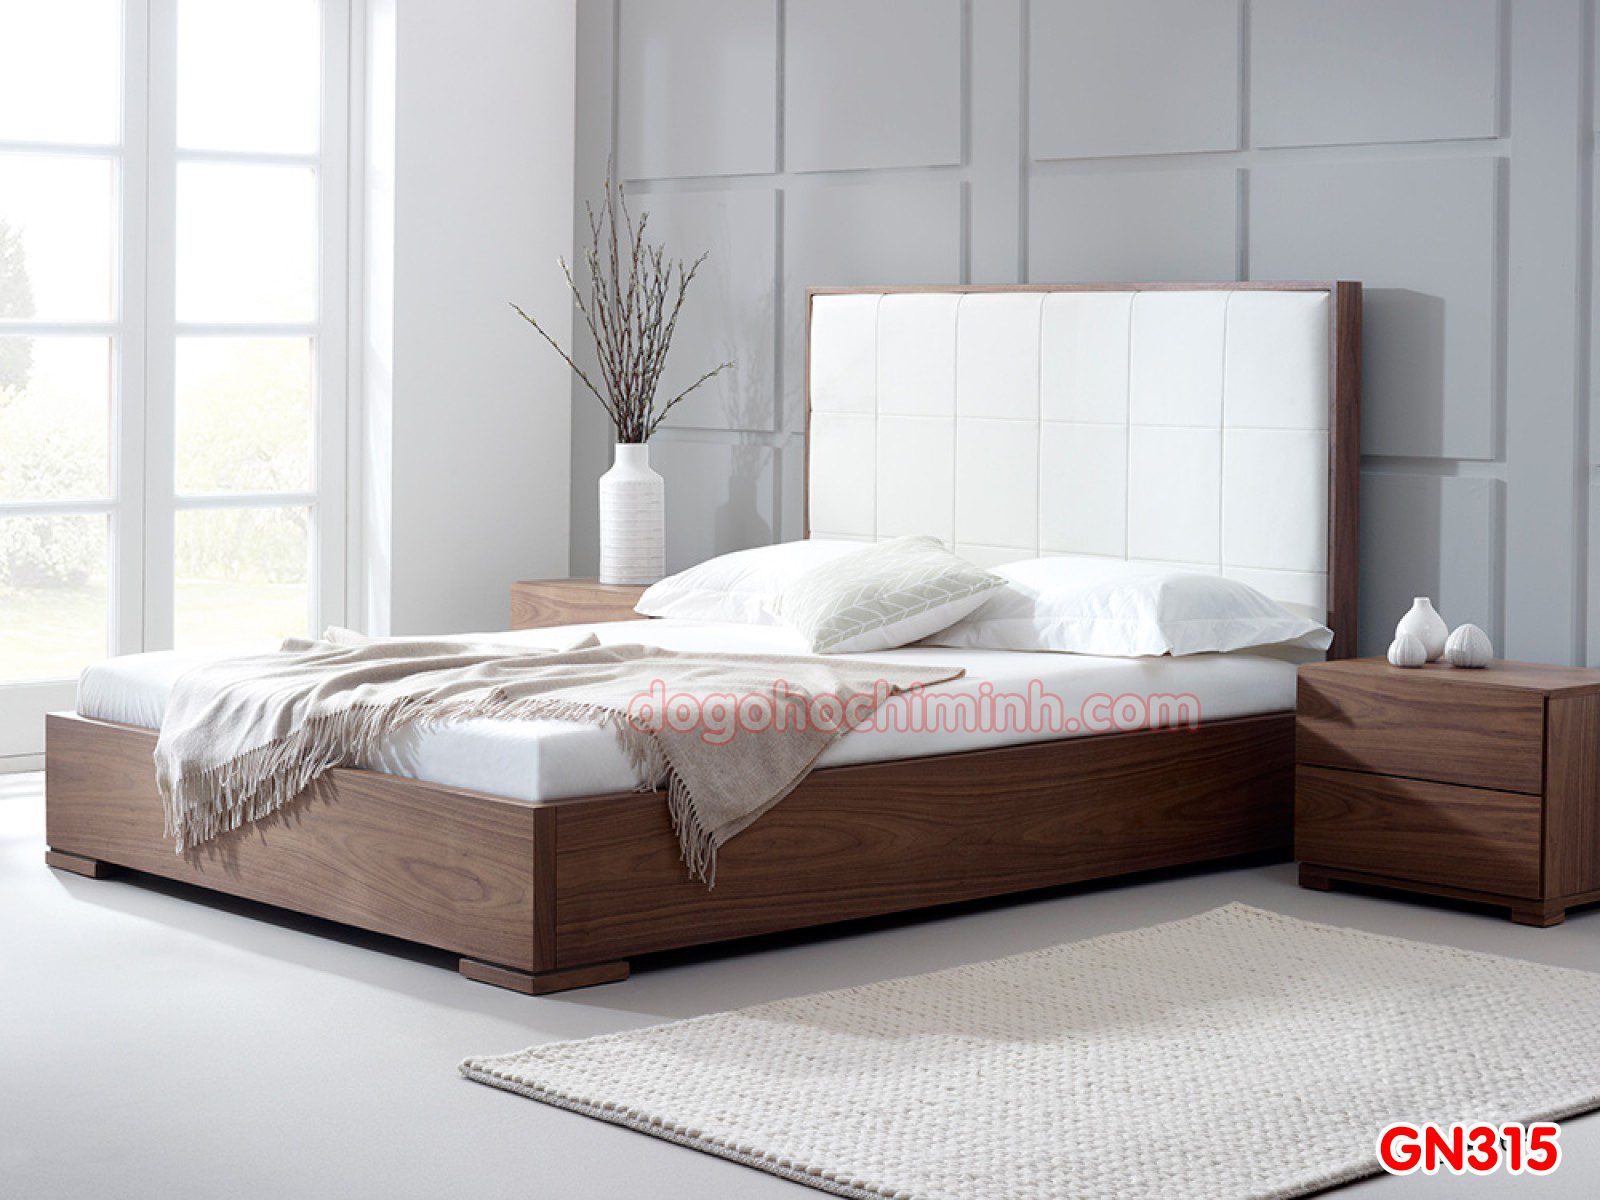 Giường ngủ gỗ đẹp cao cấp giá rẻ GN315